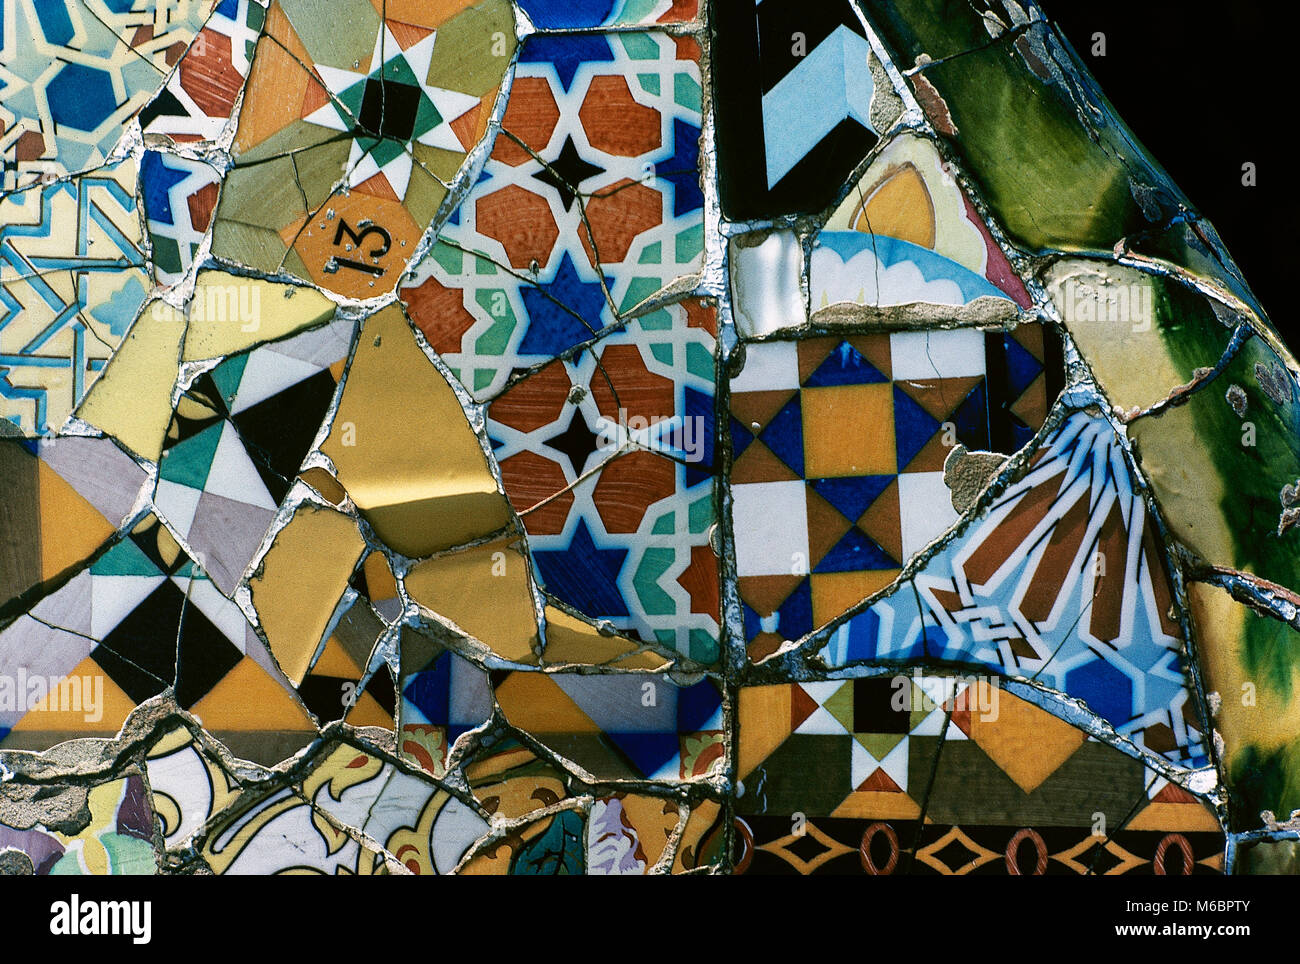 Barcellona, in Catalogna, Spagna. Parco Guell, progettato da Antonio Gaudi, 1900-1914. Mosaico sulla terrazza principale, dettaglio. Ceramica tecnica denominata Trencadis (frammenti di ceramica). Modernismo Catalano. Foto Stock